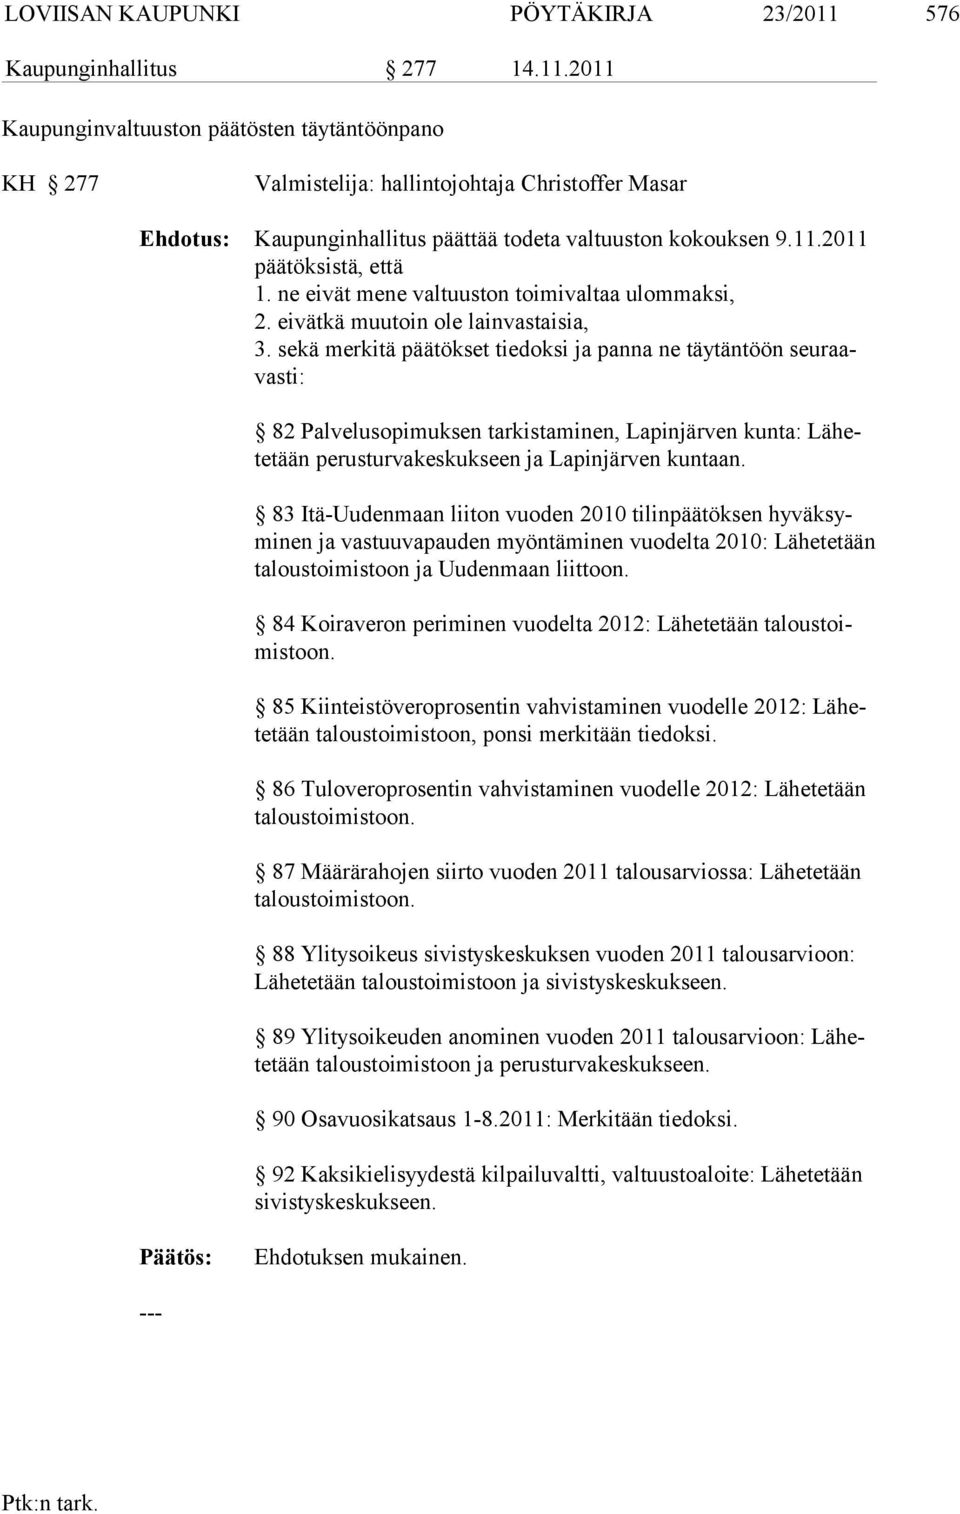 sekä merkitä päätökset tiedoksi ja panna ne täytäntöön seuraavasti: 82 Palvelusopimuksen tarkistaminen, Lapinjärven kunta: Lähetetään pe rusturvakeskukseen ja Lapinjärven kuntaan.